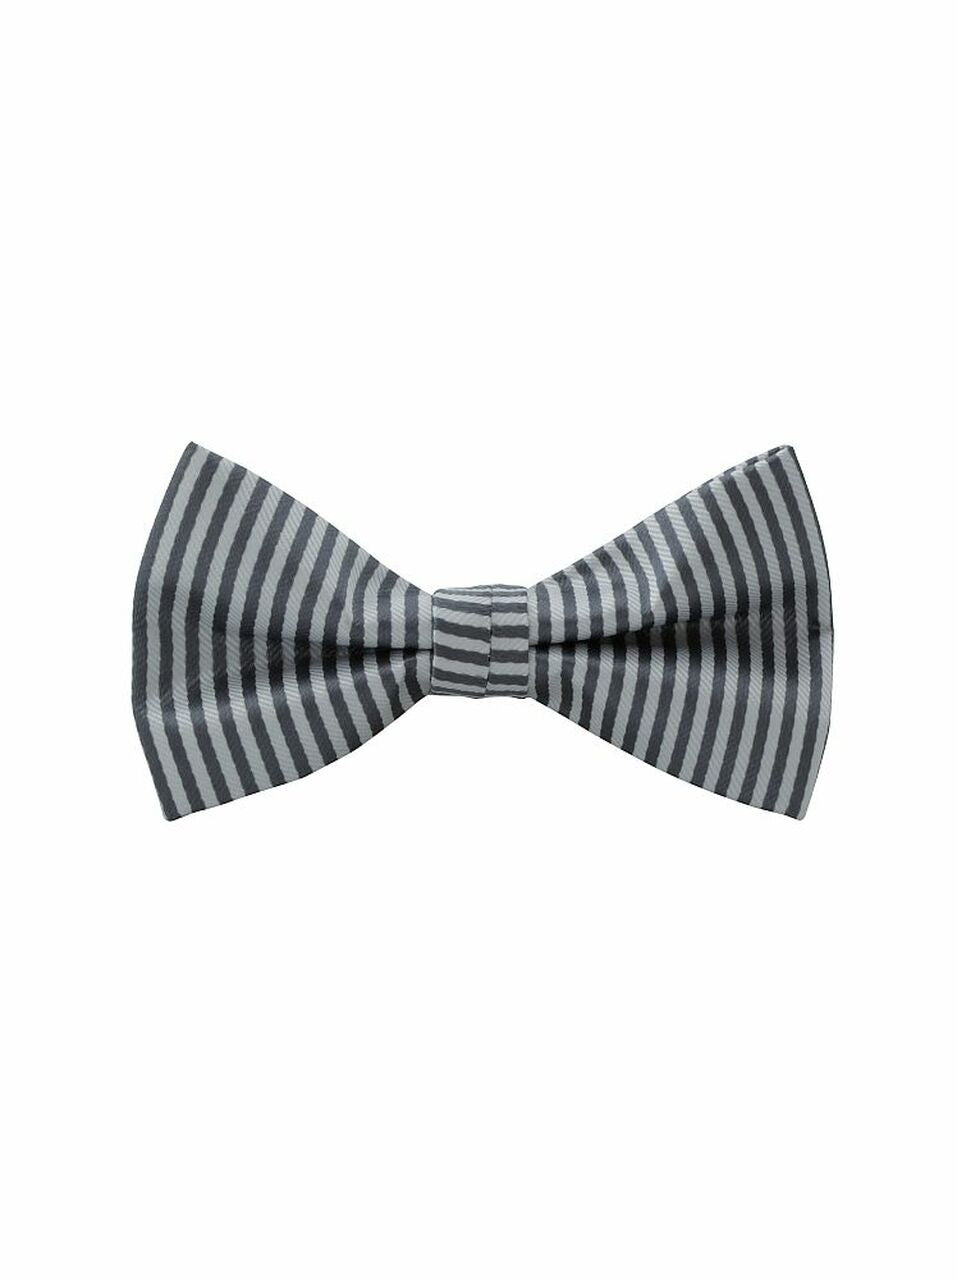 Bow Tie 'Grey/White Stripe'